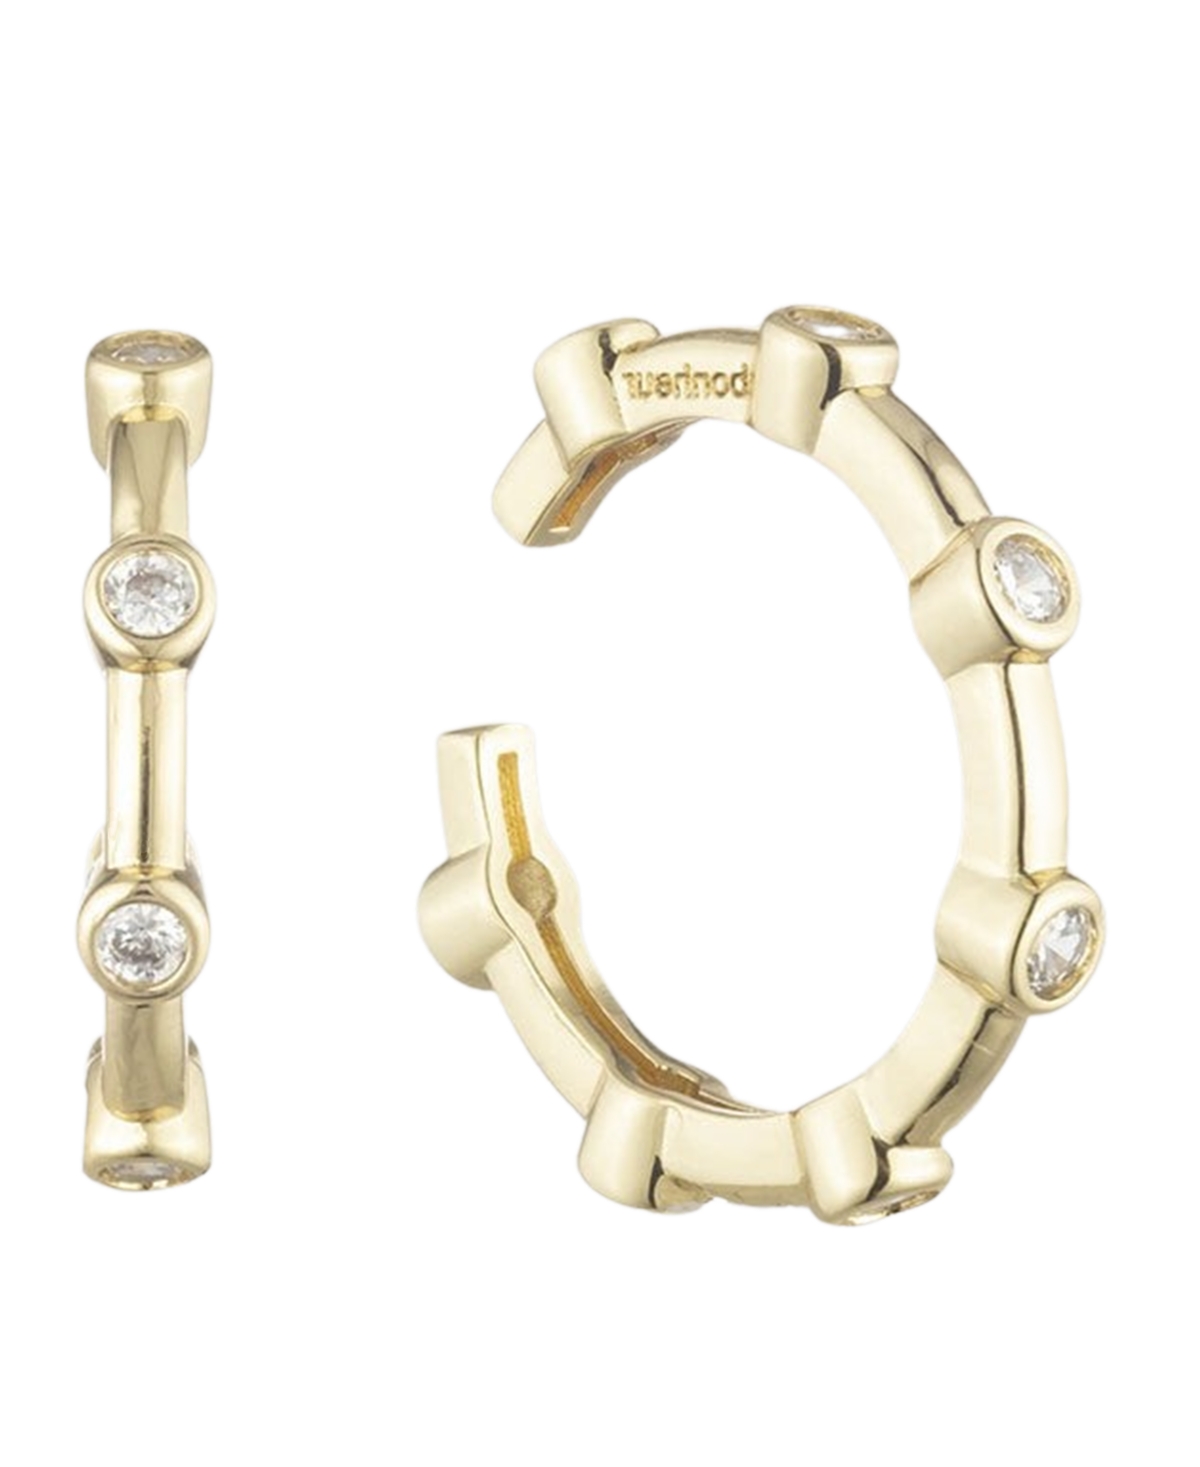 Bonheur Jewelry Diana Ear Cuff Earrings In Karat Gold Plated Brass